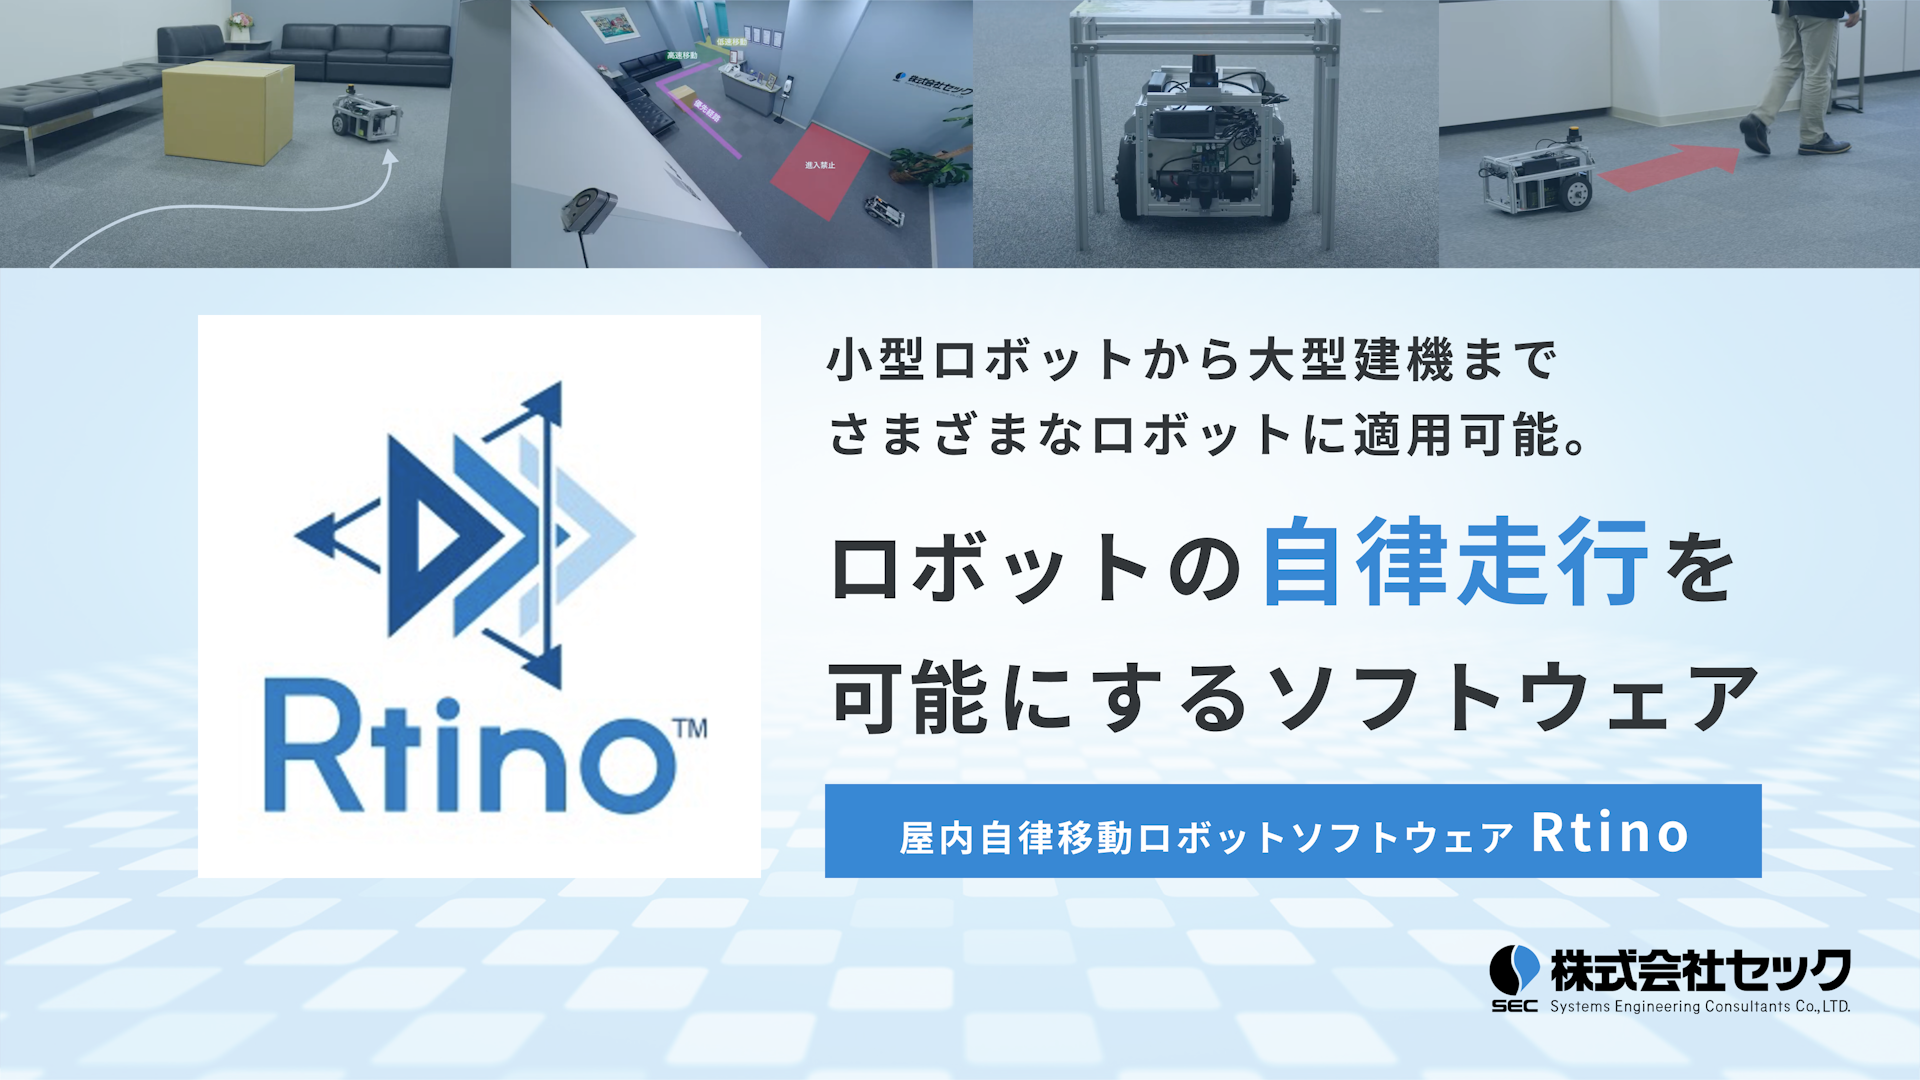 Rtino（アルティノ）- 屋内自律移動ロボットソフトウェア